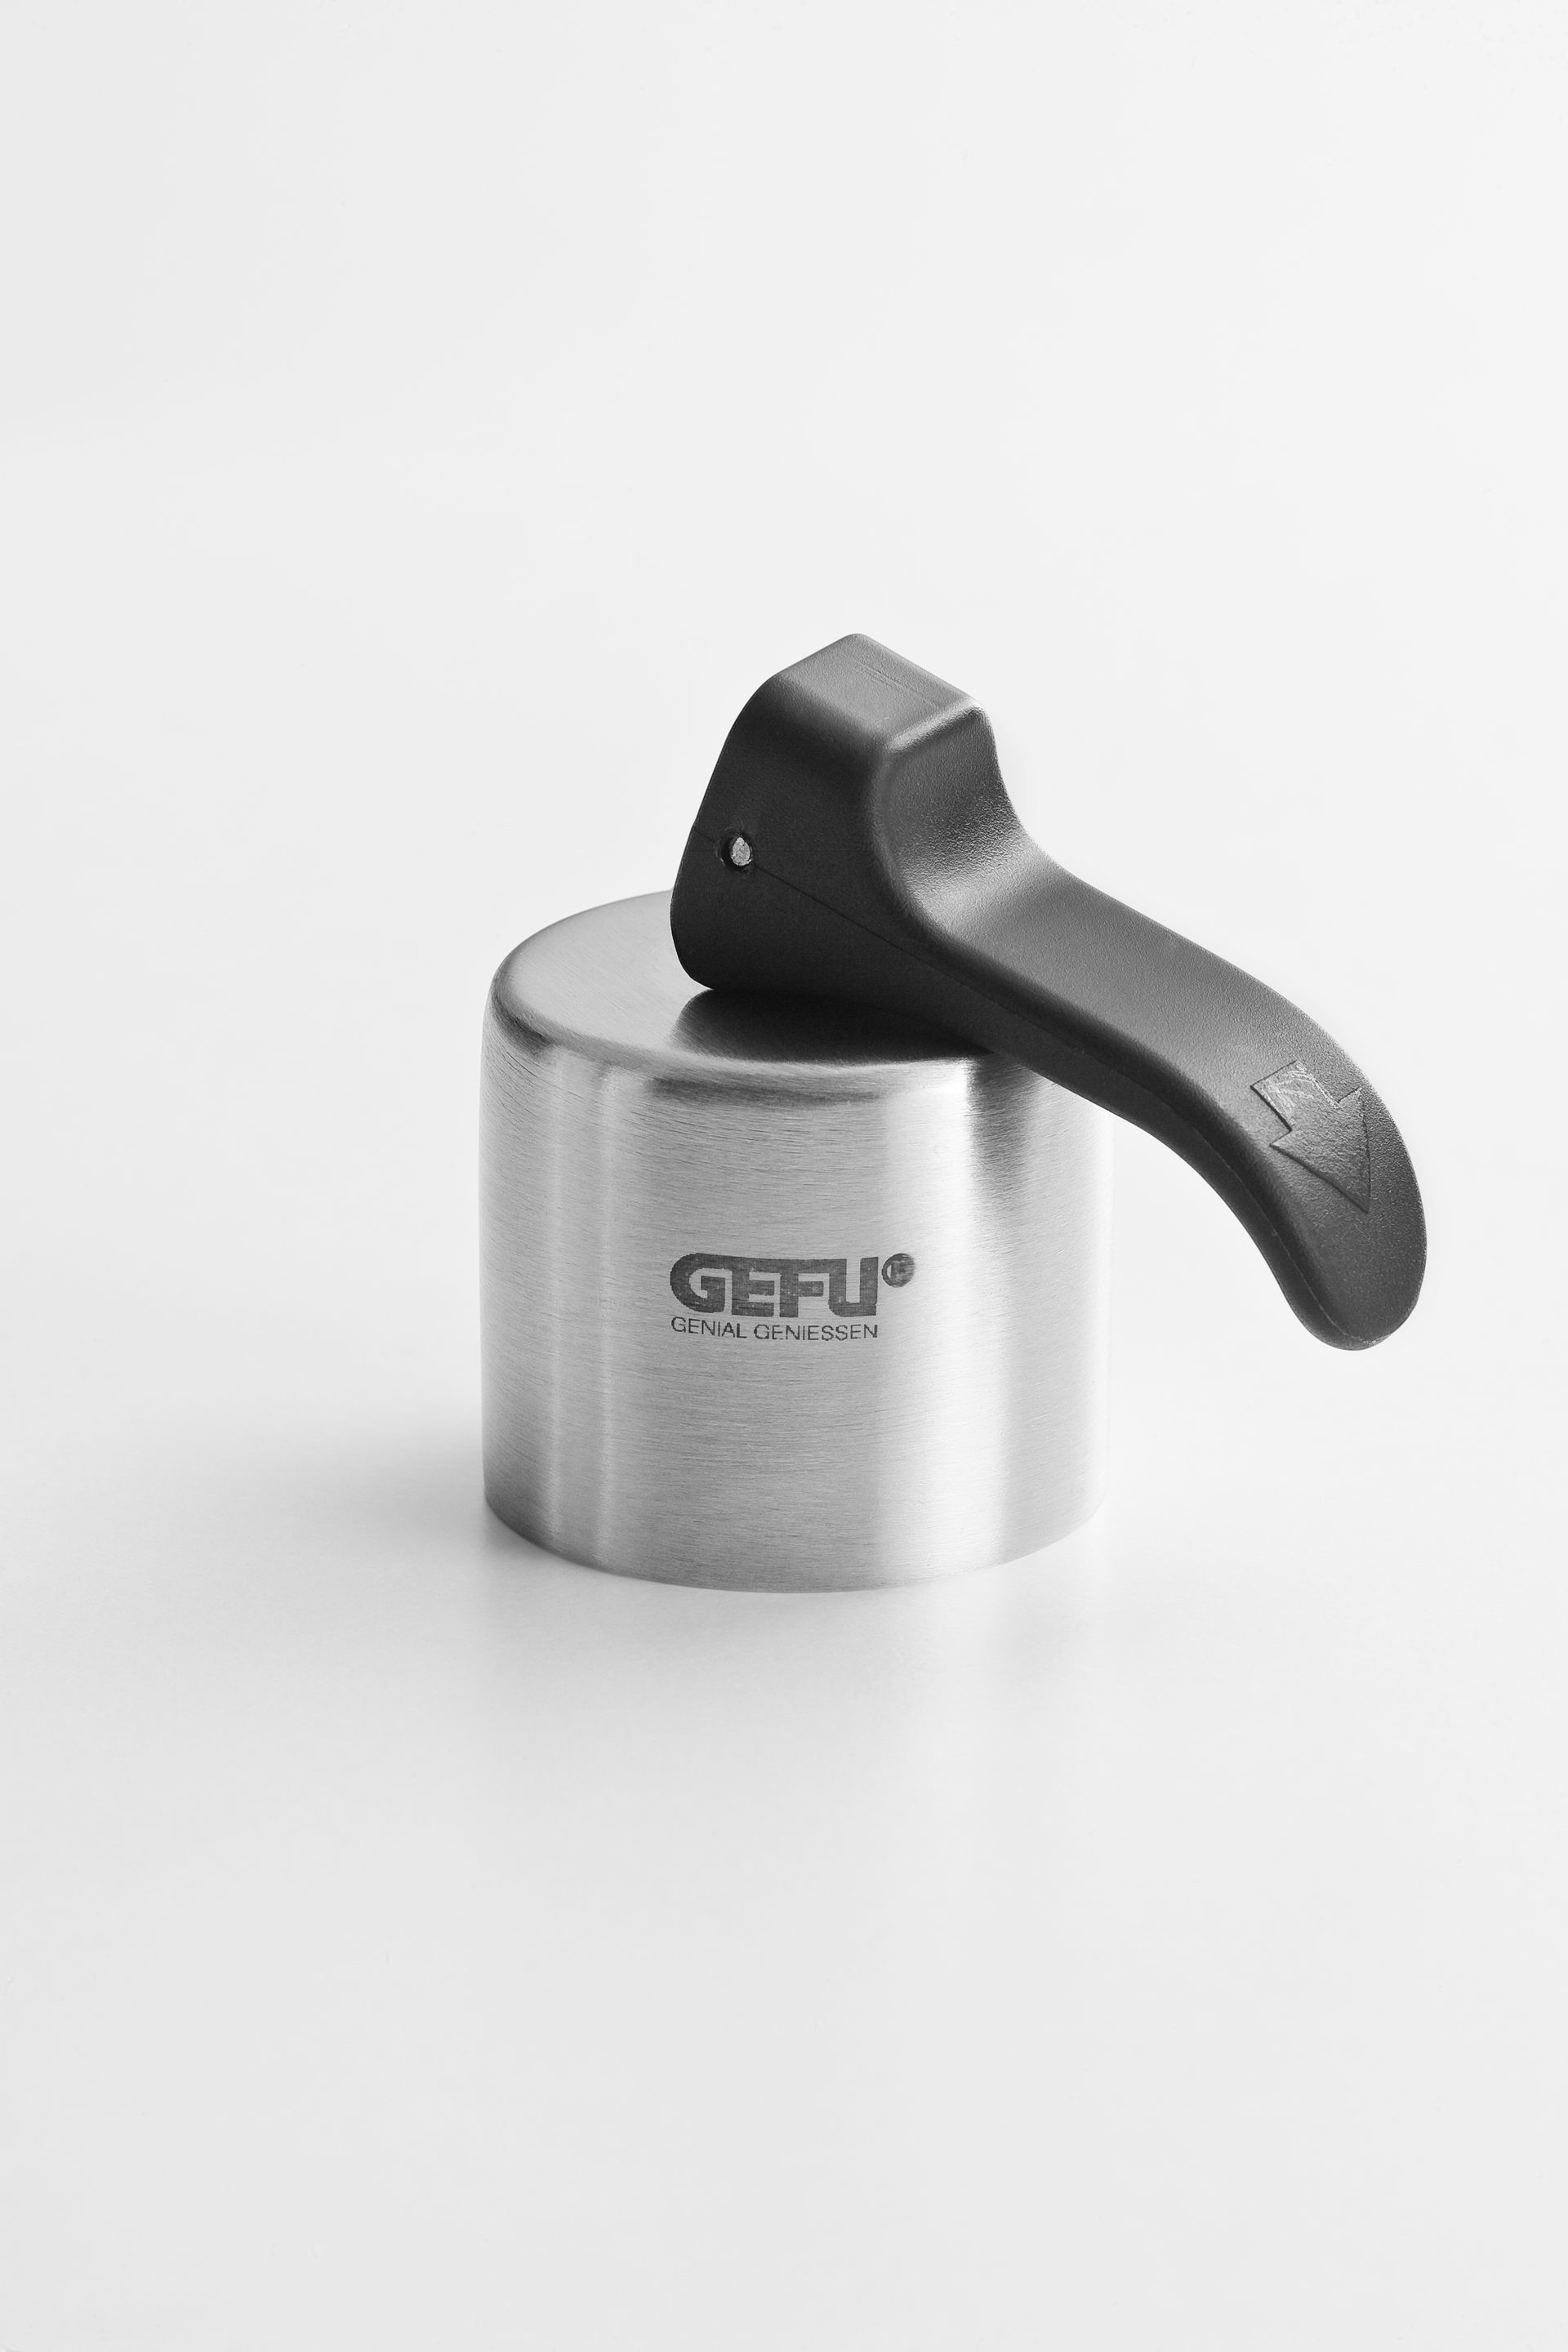 Küchenhelfer Gefu aus Kunststoff in Silber Schwarz GEFU Flaschenverschluss hochwertiger Edelstahl & Kunststoff